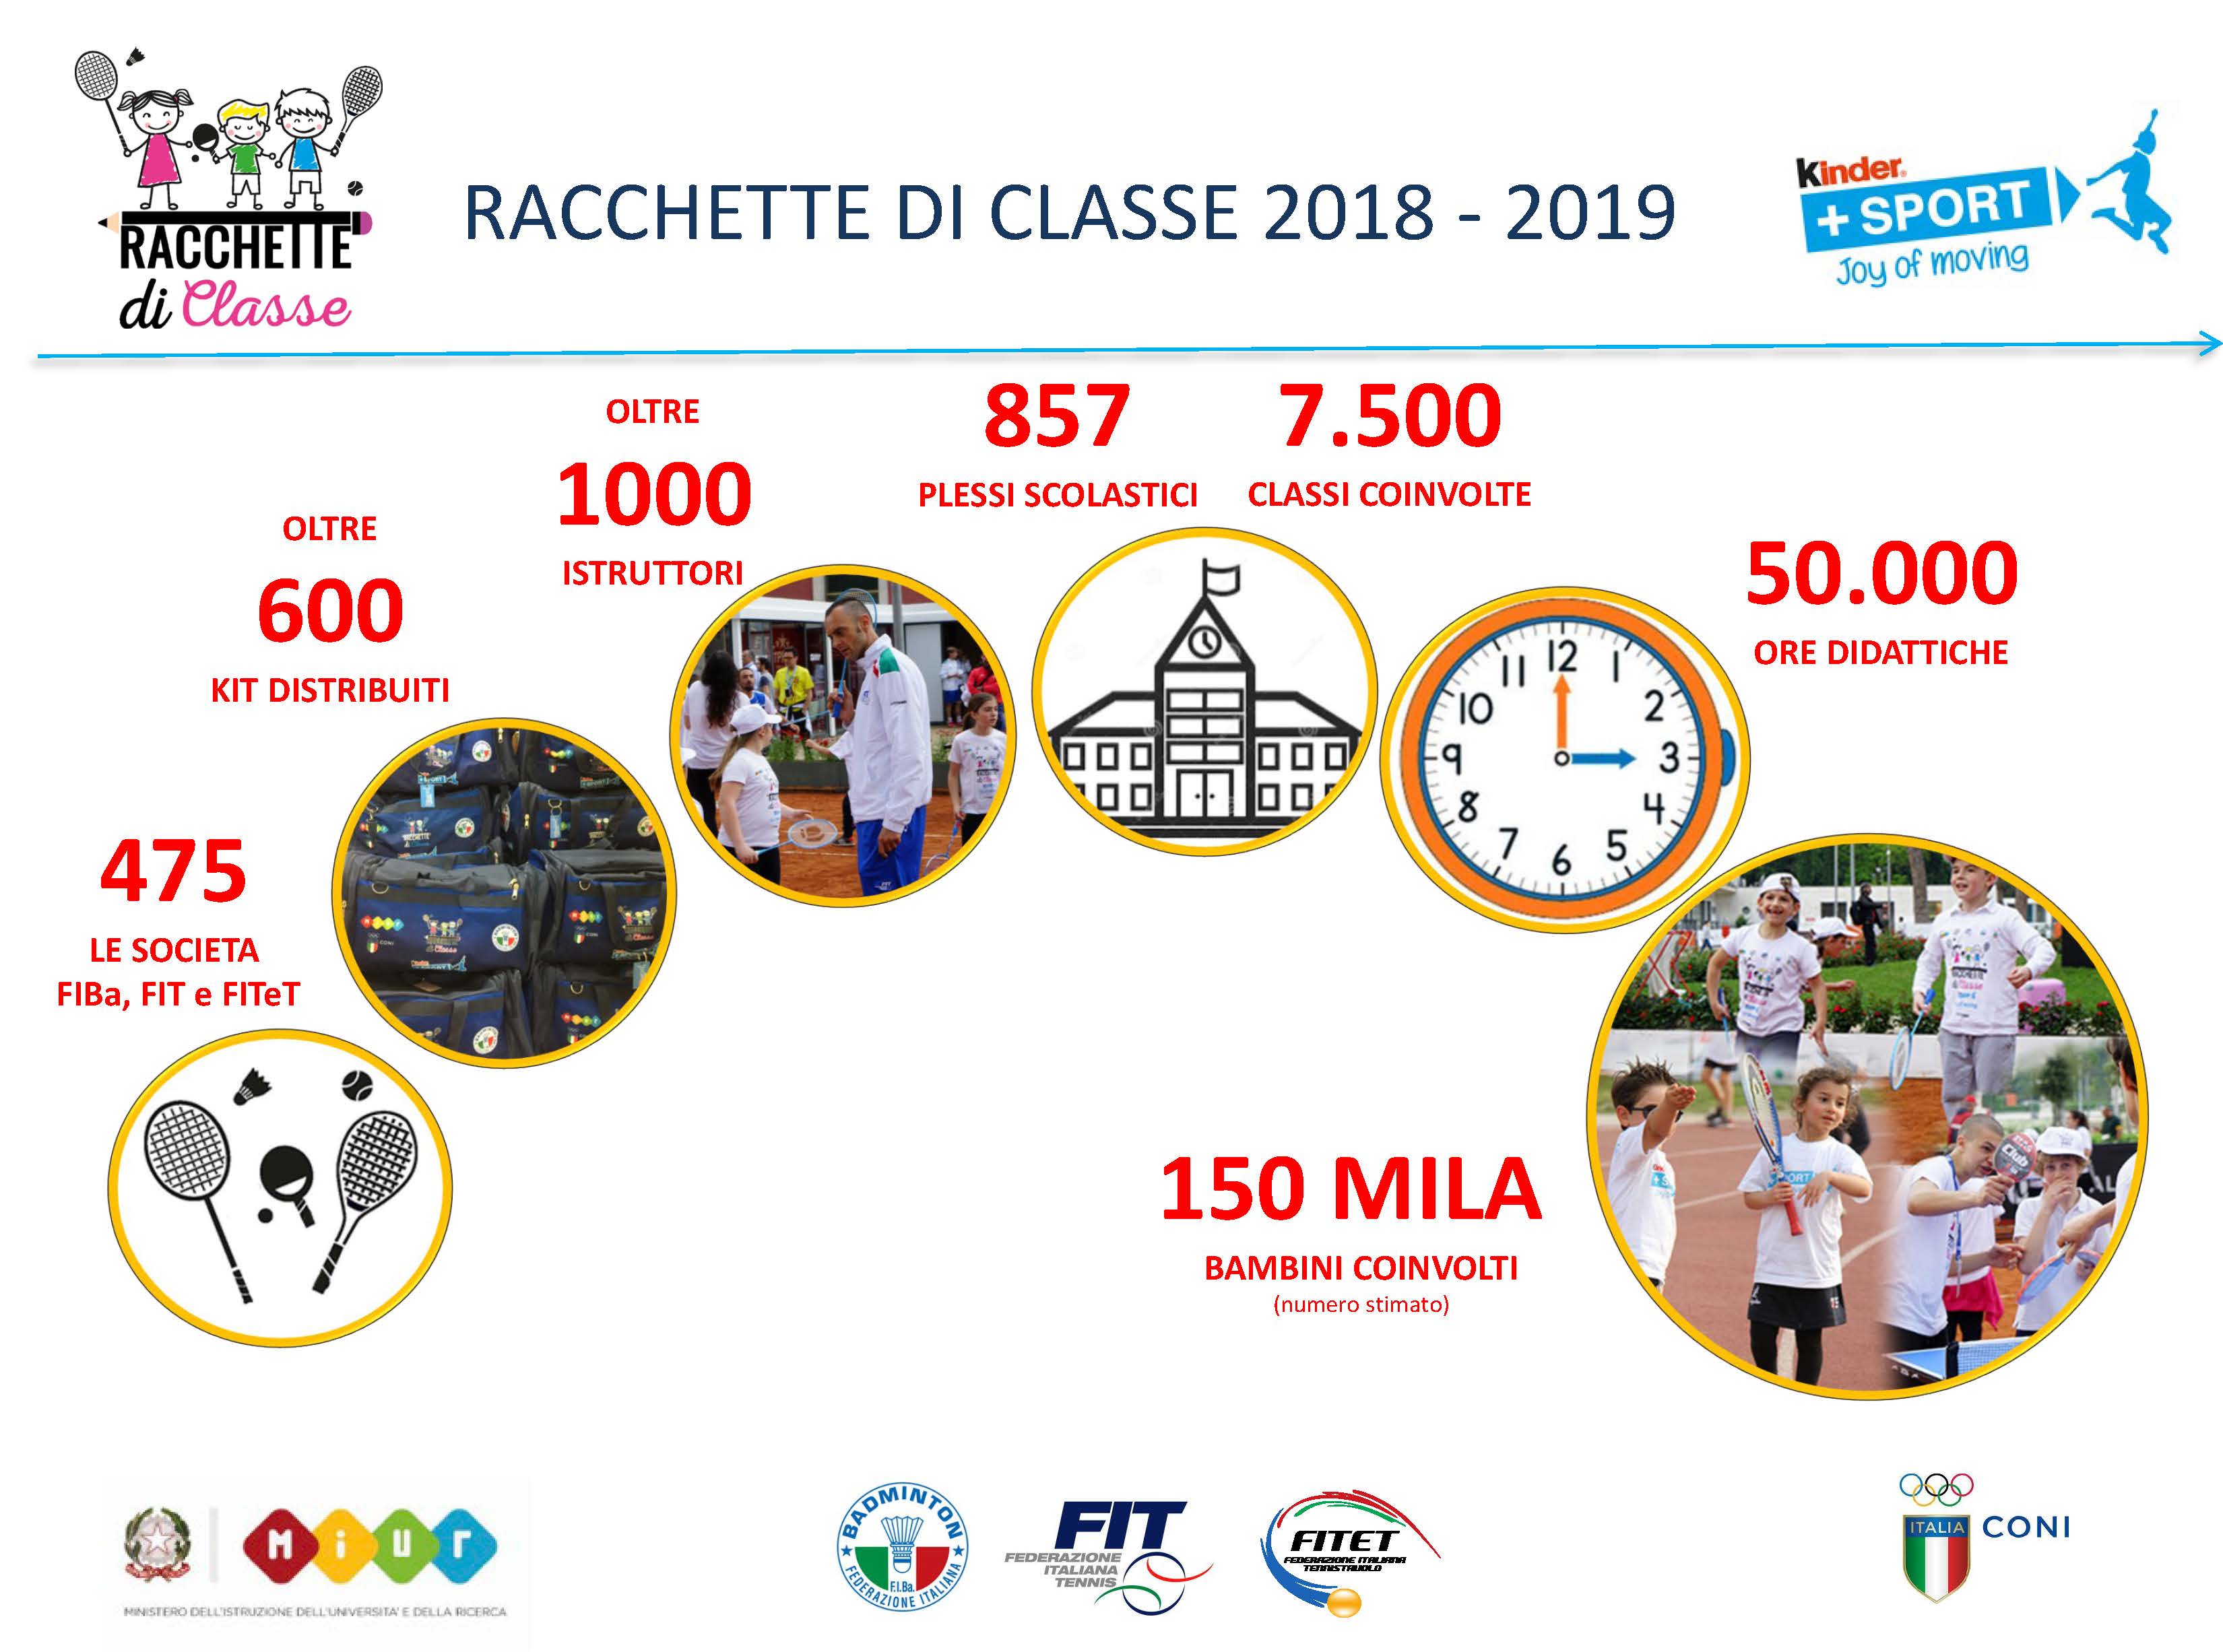 SCHEDA RACCHETTE DI CLASSE 2019